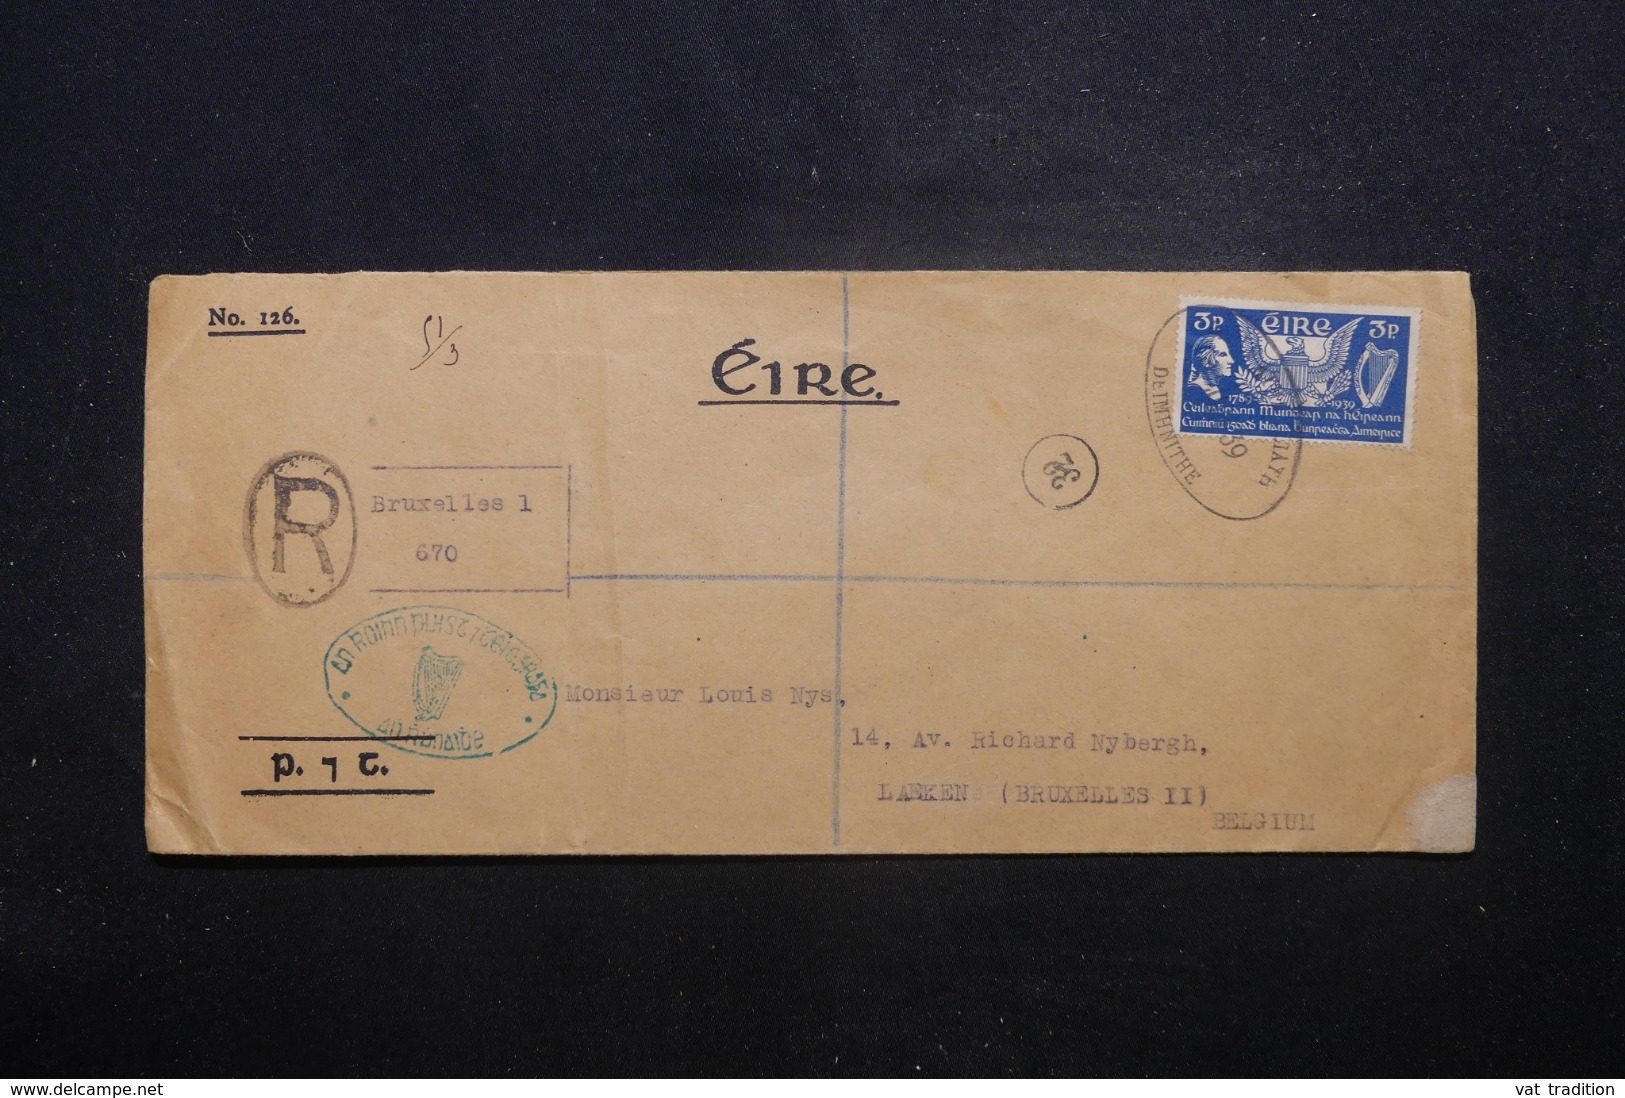 IRLANDE - Enveloppe En Recommandé Pour La Belgique En 1939, Voir étiquettes Belge Au Verso - L 45146 - Covers & Documents